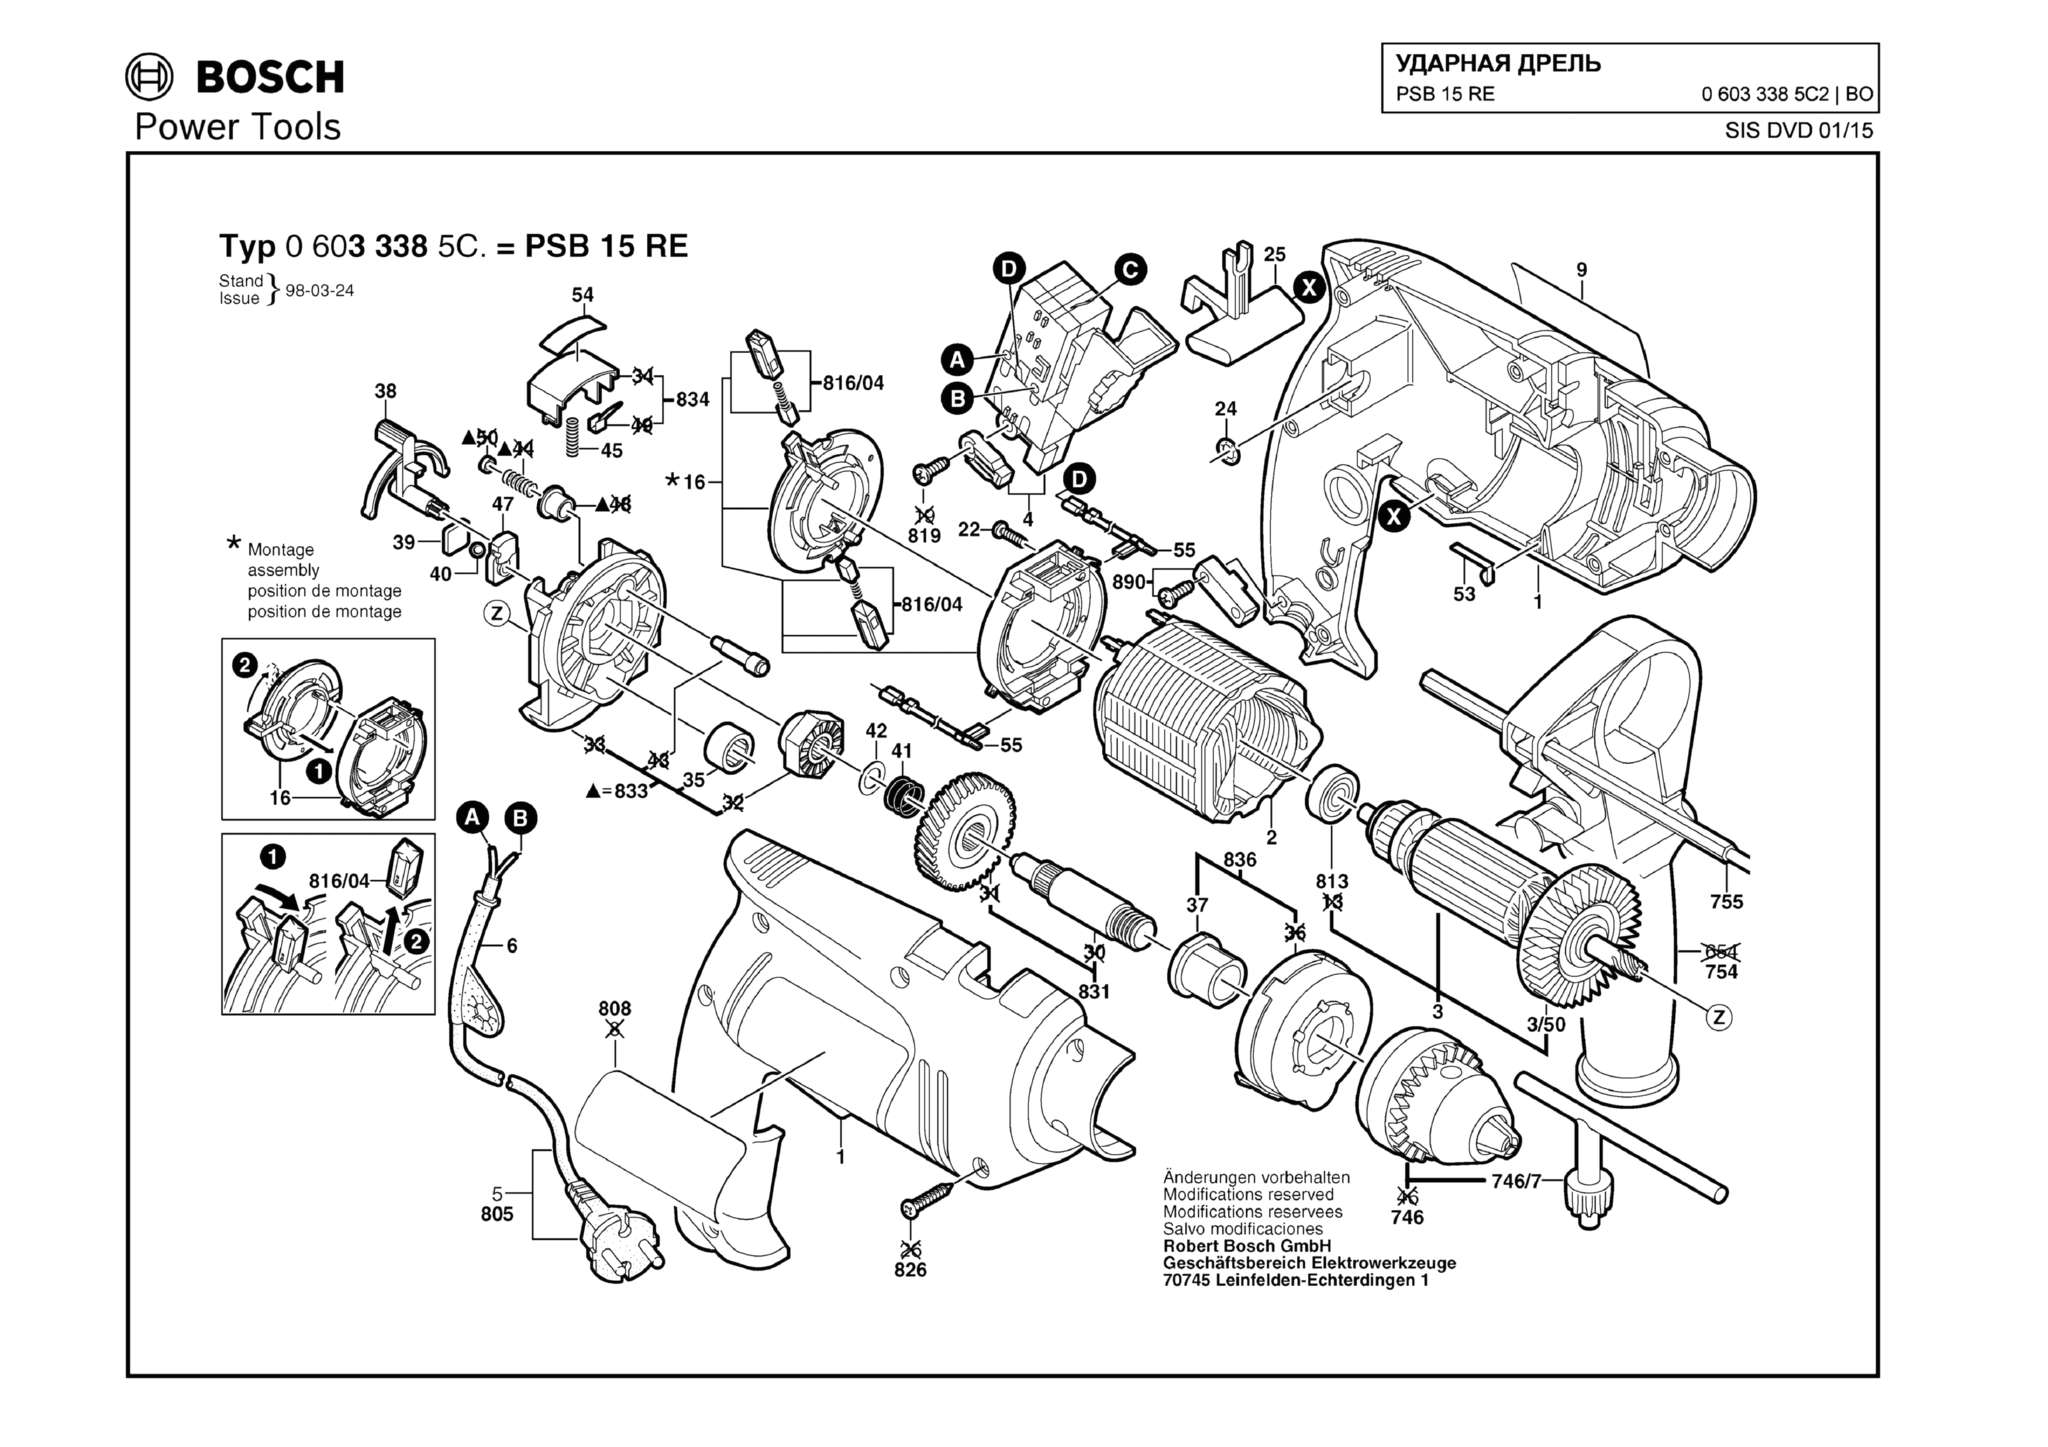 Запчасти, схема и деталировка Bosch PSB 15 RE (ТИП 06033385C2)